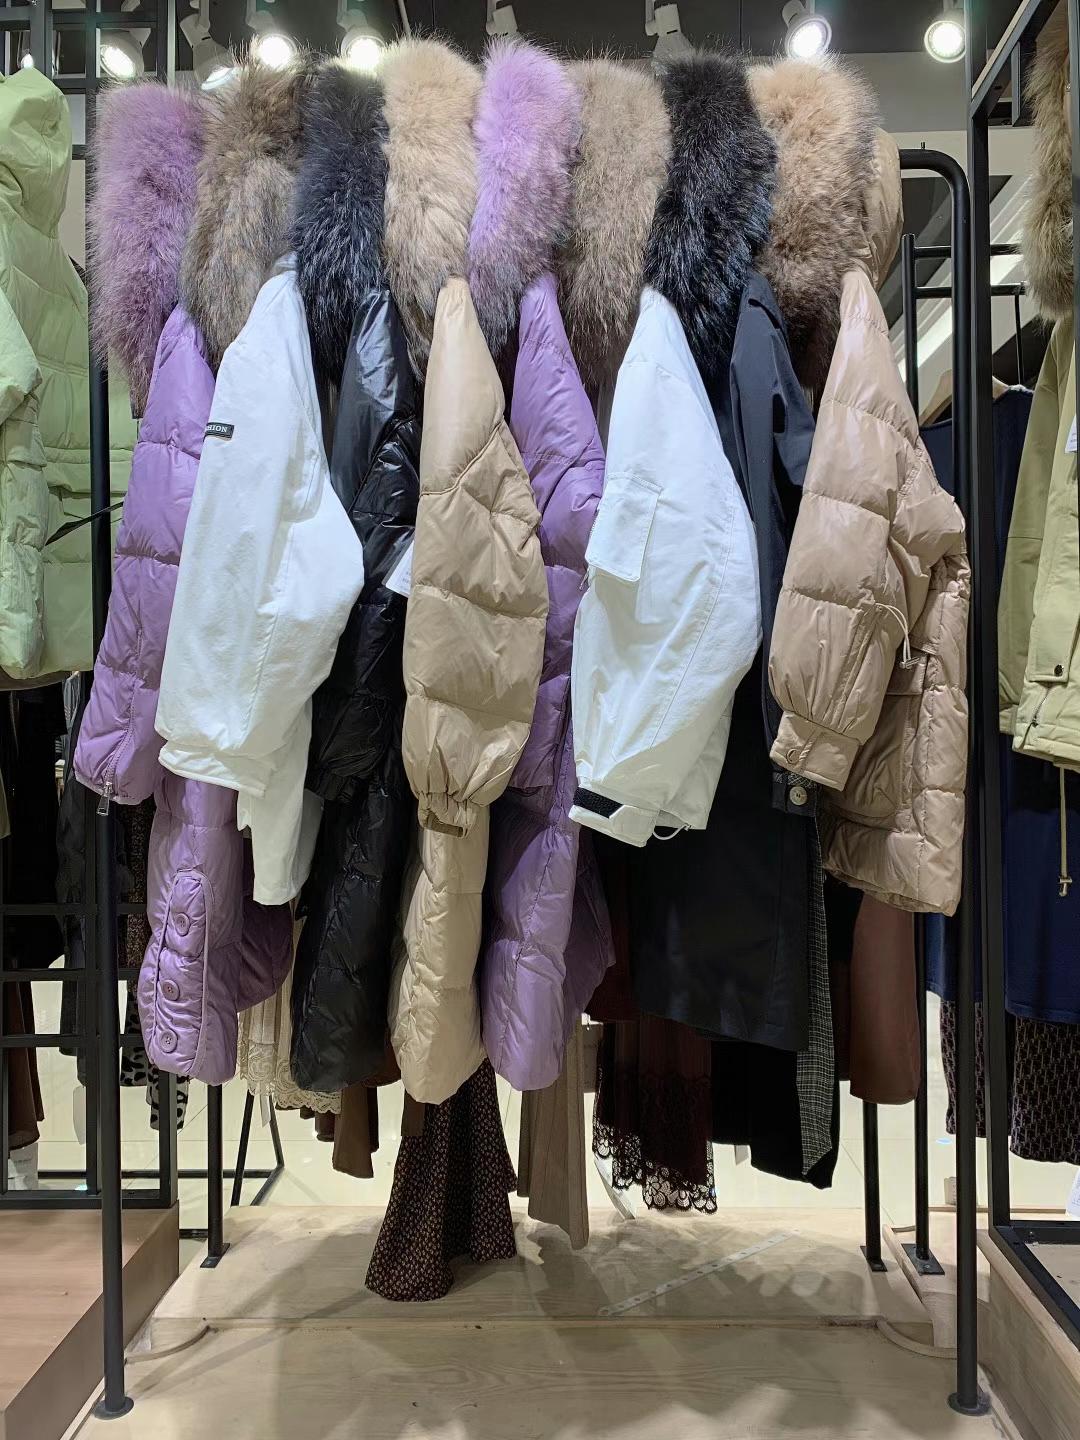 摩卡素2021冬当新新款皮草羽绒服品牌女装折扣批发供应商